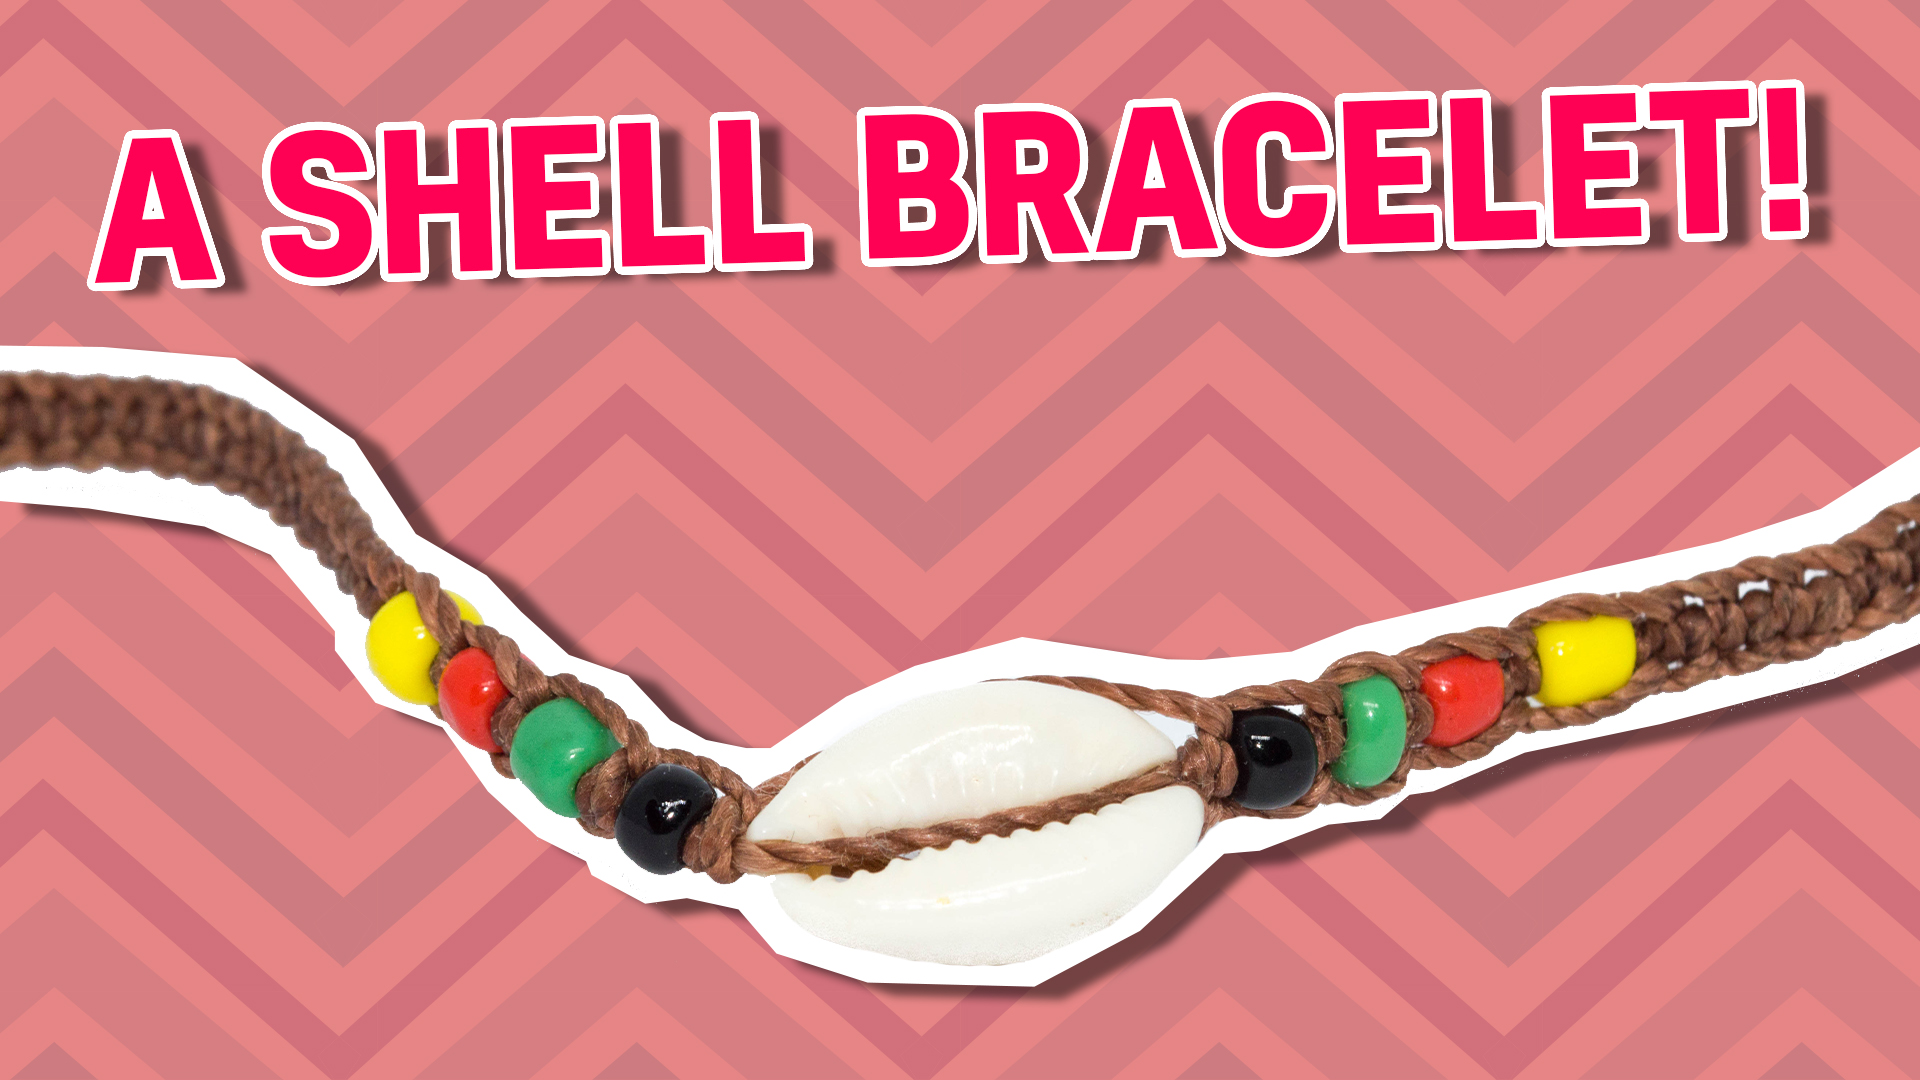 A shell bracelet